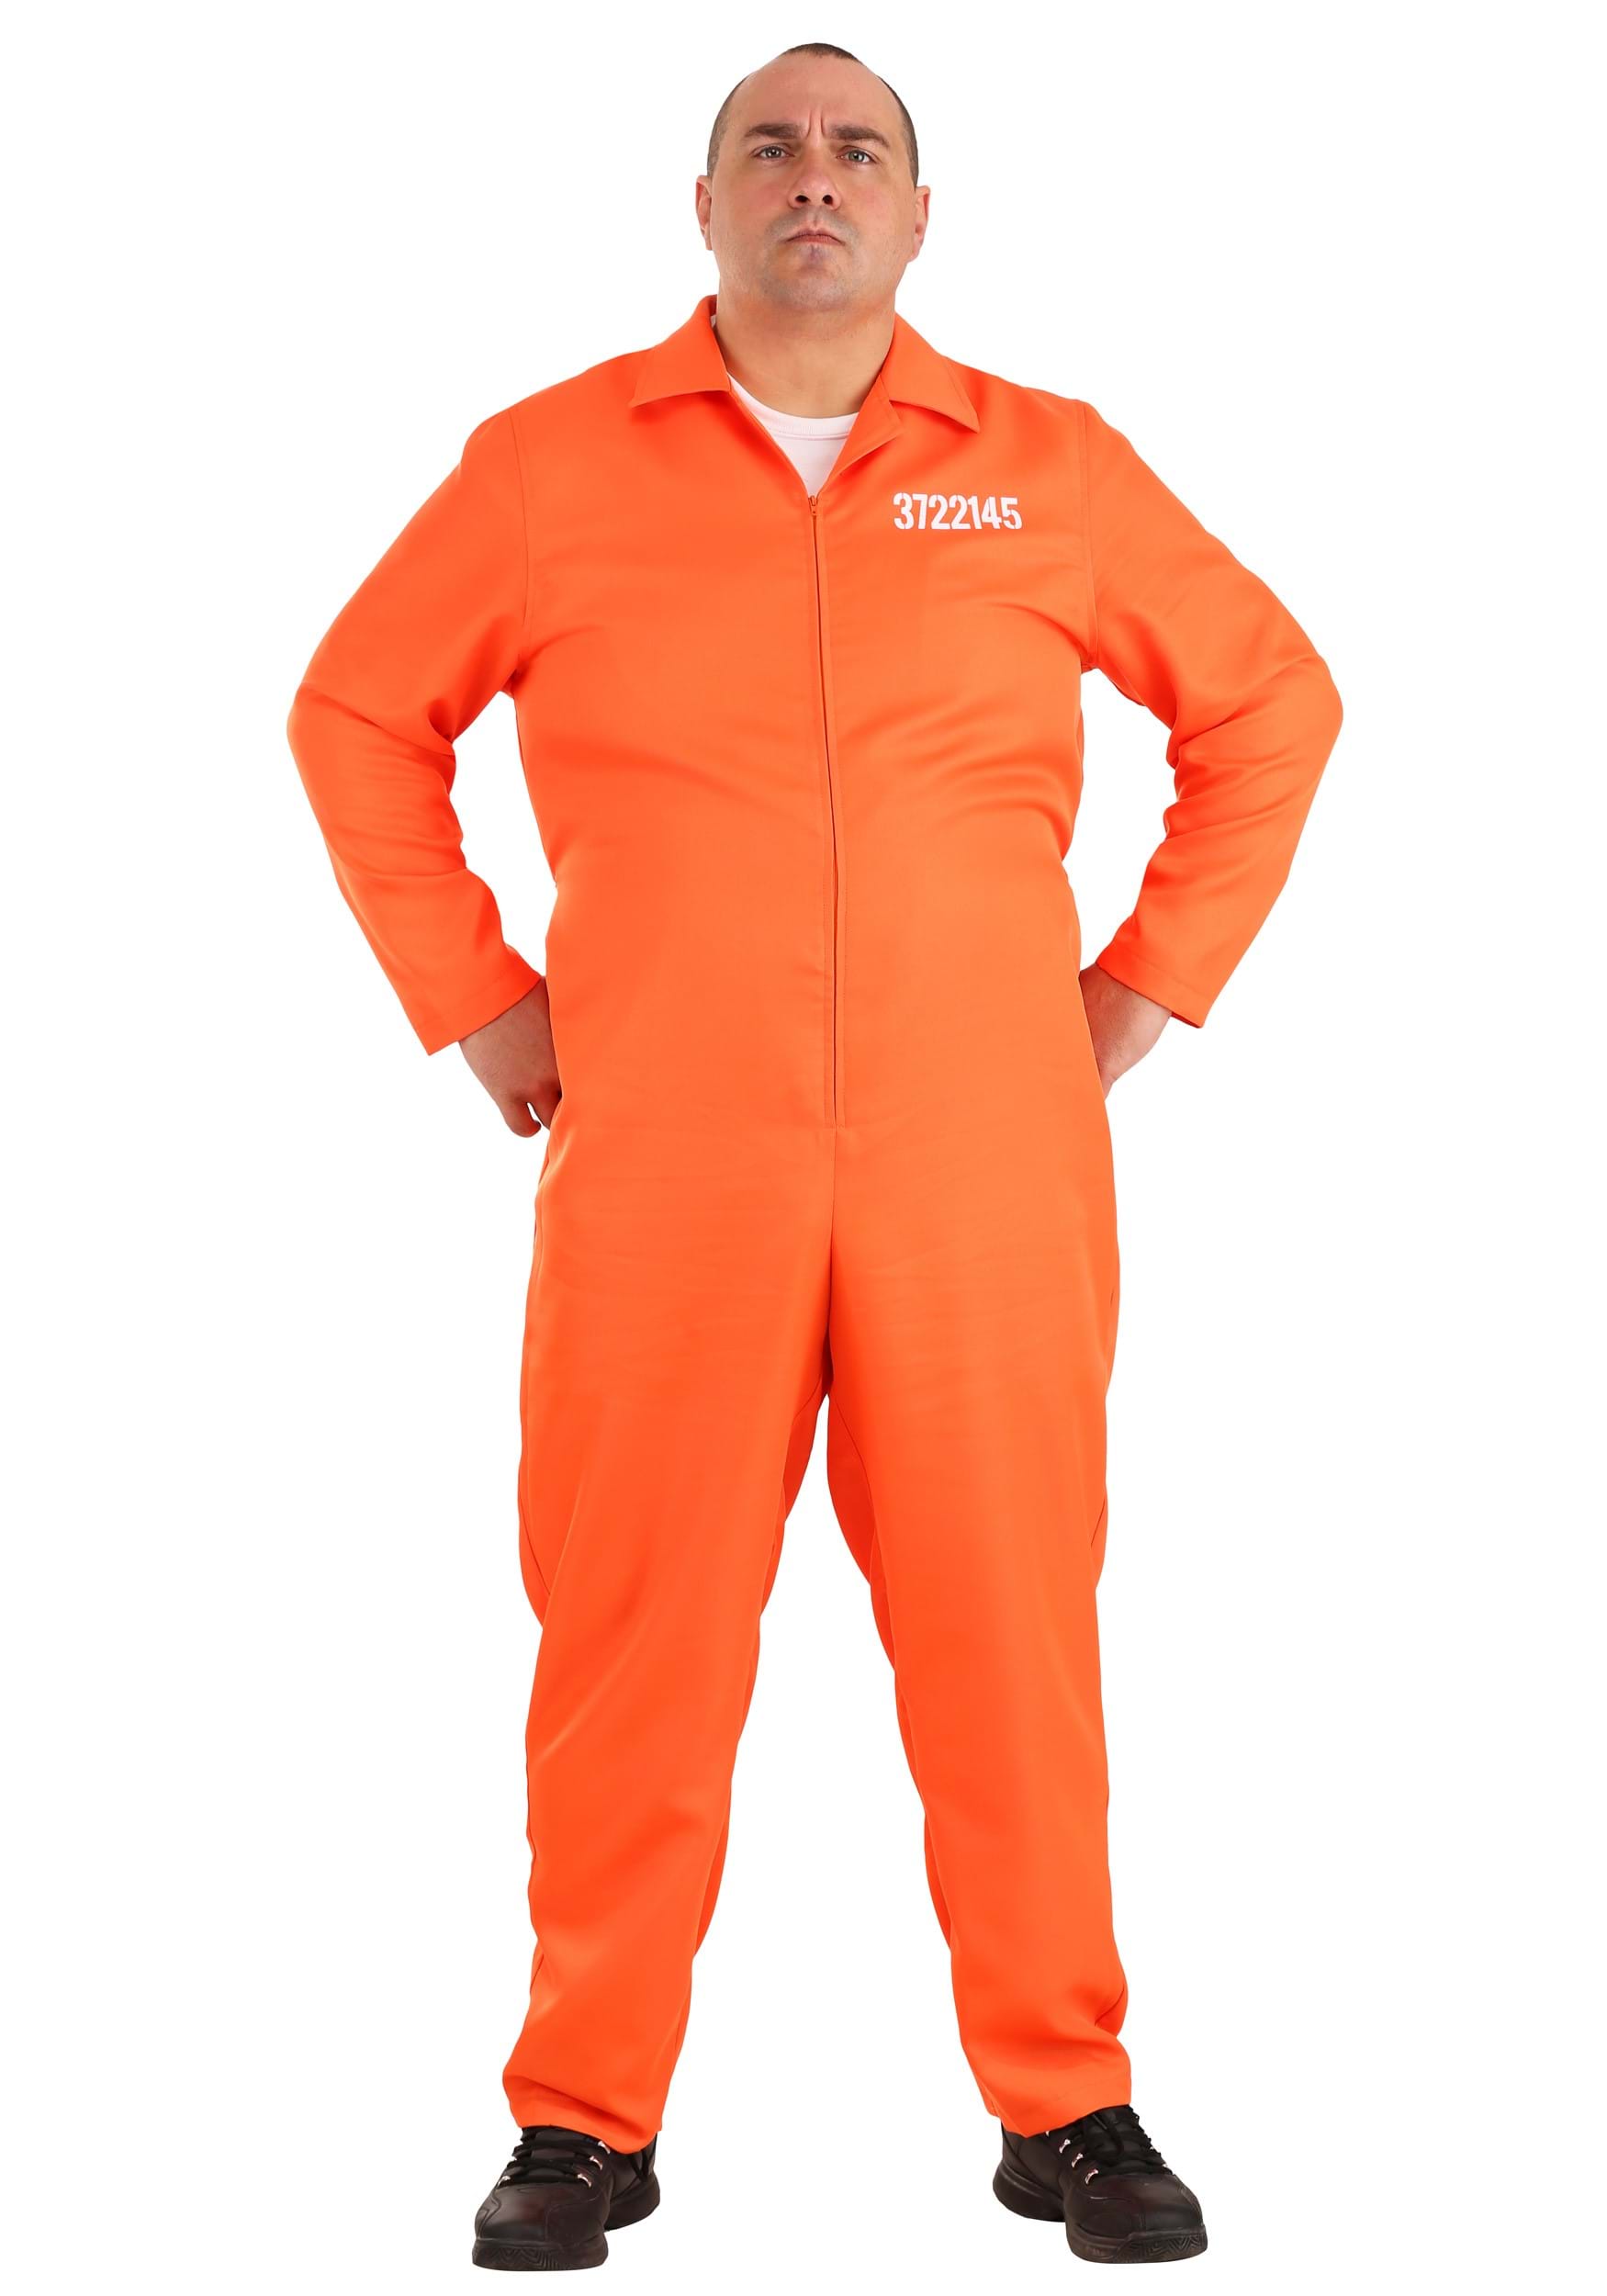 Photos - Fancy Dress FUN Costumes Men's Plus Size Orange Prison Jumpsuit Orange/White